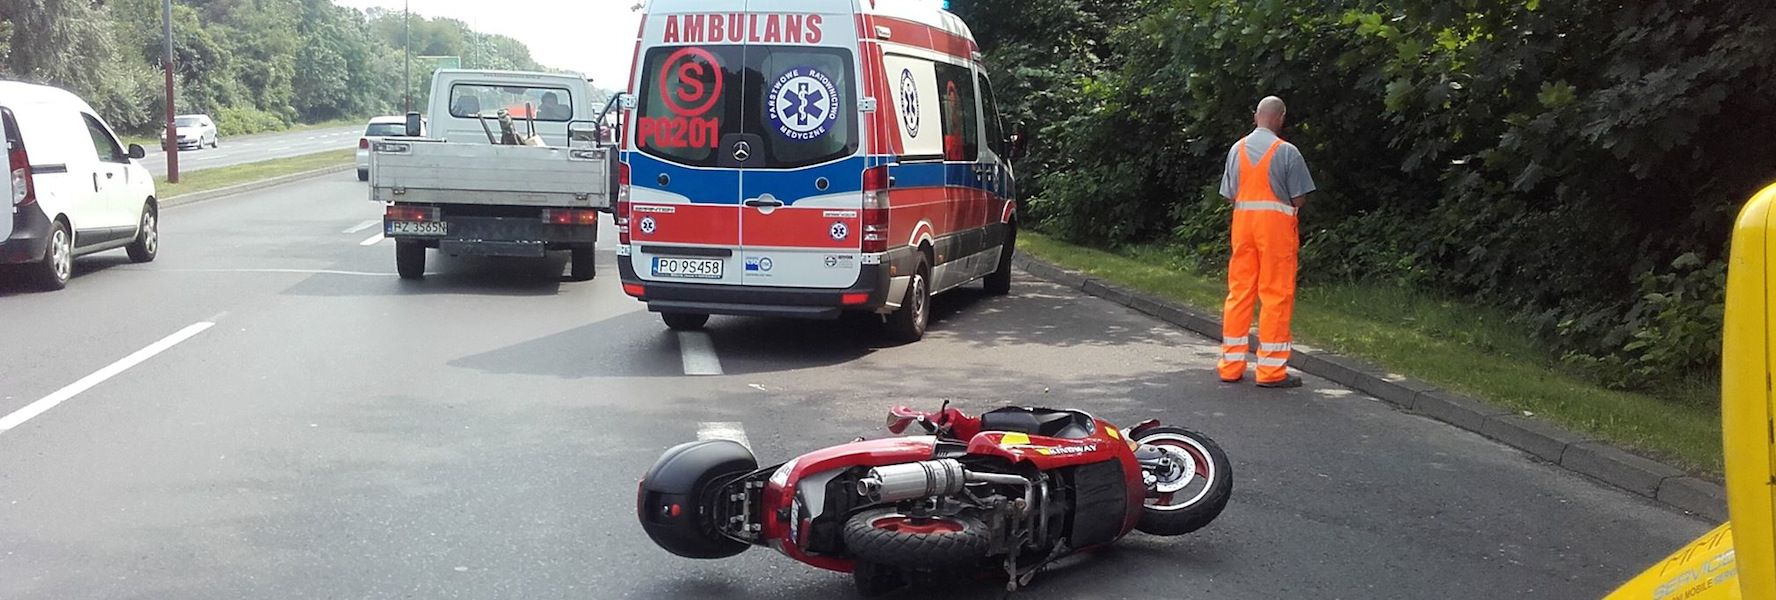 Wypadek motocyklisty w Skórzewie, lądował śmigłowiec ratunkowy